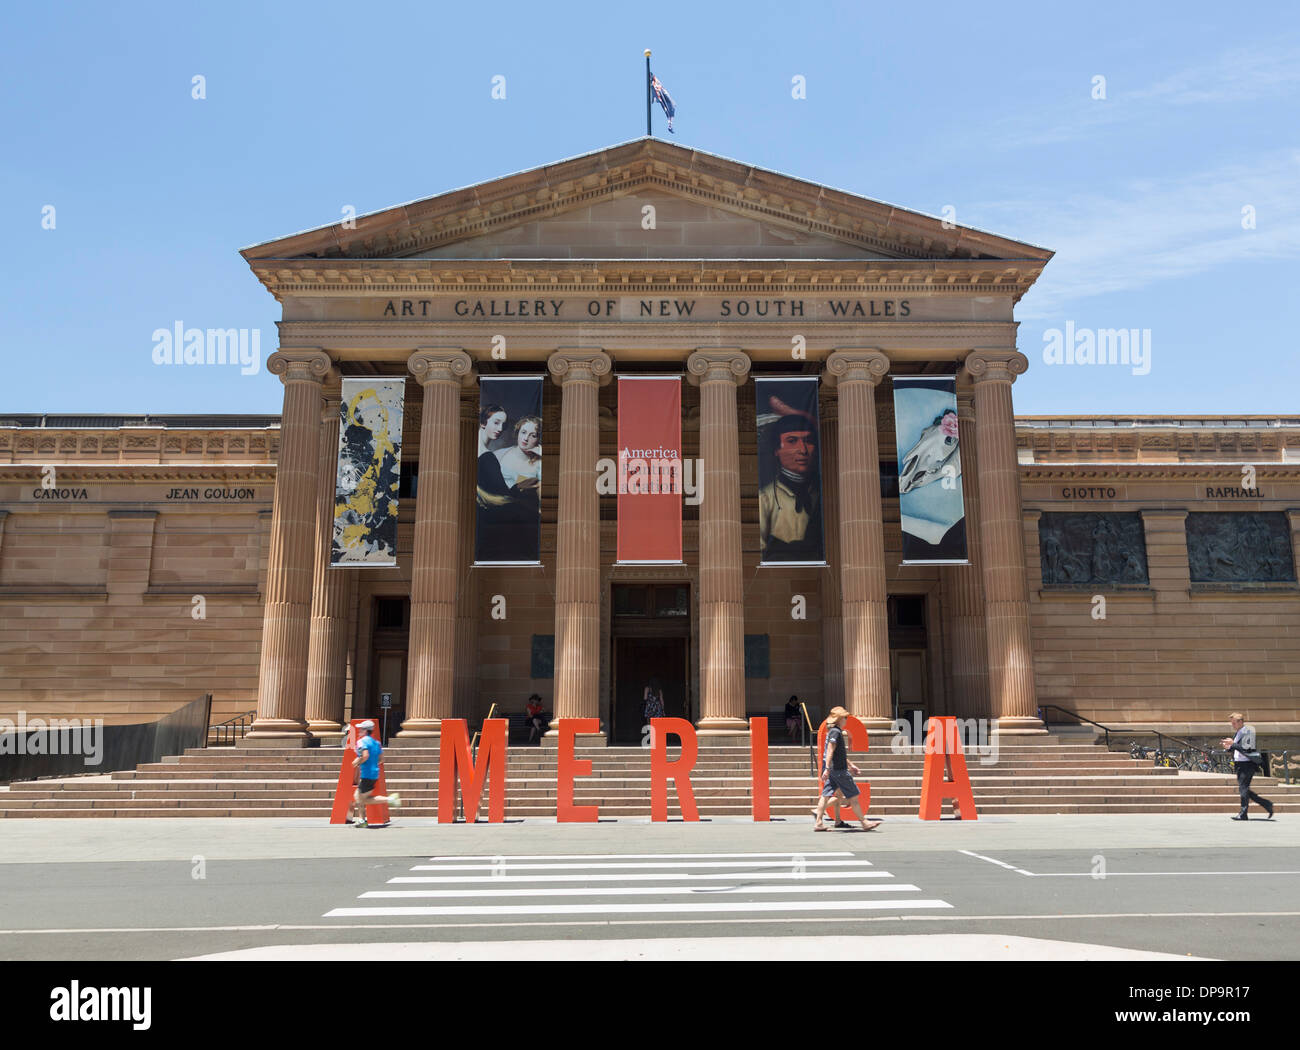 Art Gallery of New South Wales in Sydney, Australien - während einer Ausstellung der amerikanischen Malerei in der Galerie Stockfoto